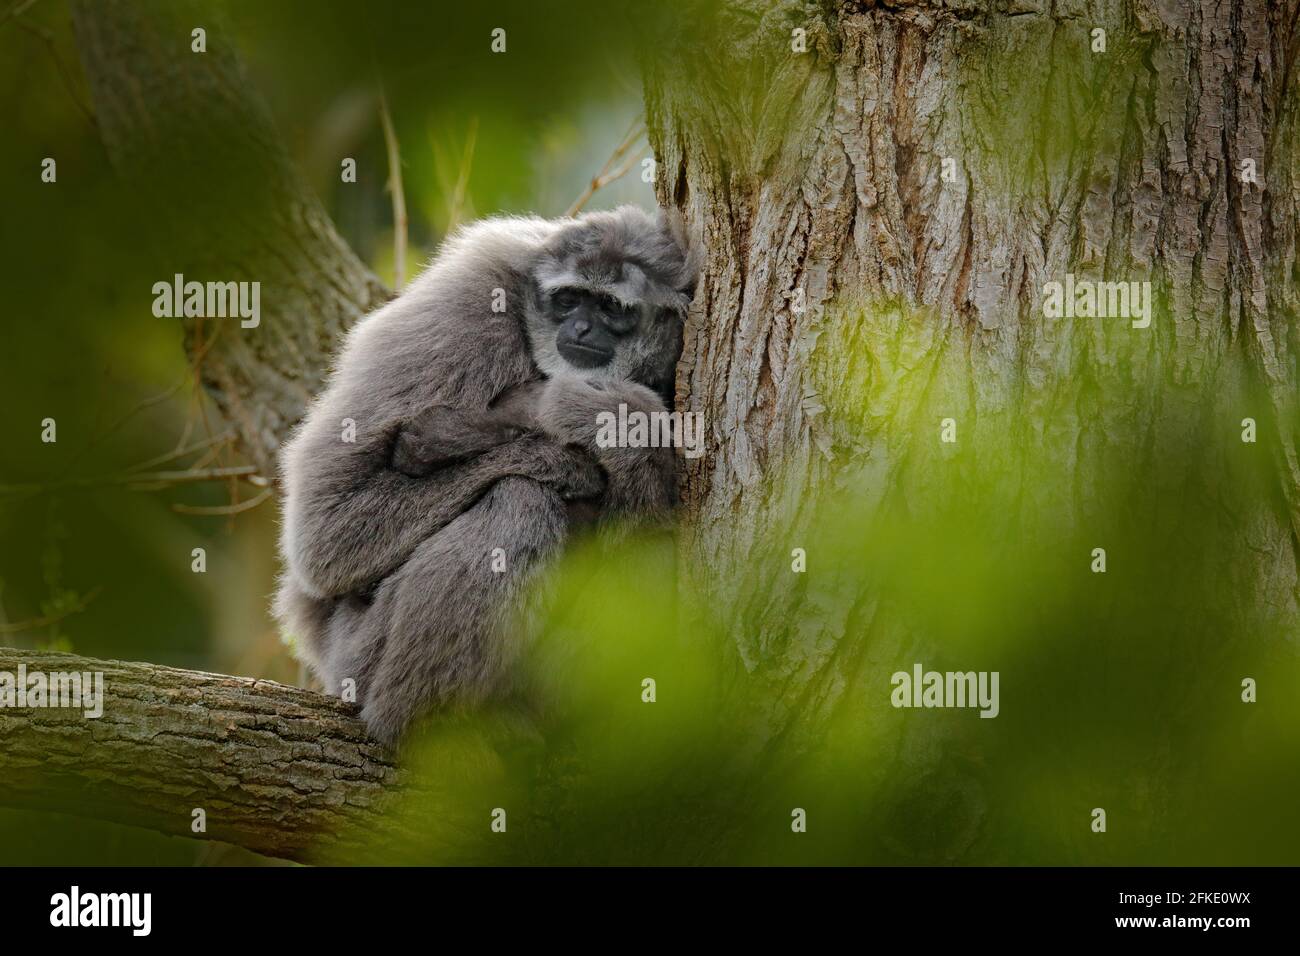 Javan silvery Gibbon, Hylobates moloch, Affe in der Natur Wald Lebensraum. Grauer Gibbon auf dem Baum, Java, Indonesien in Asien. Wildlife-Szene aus wi Stockfoto